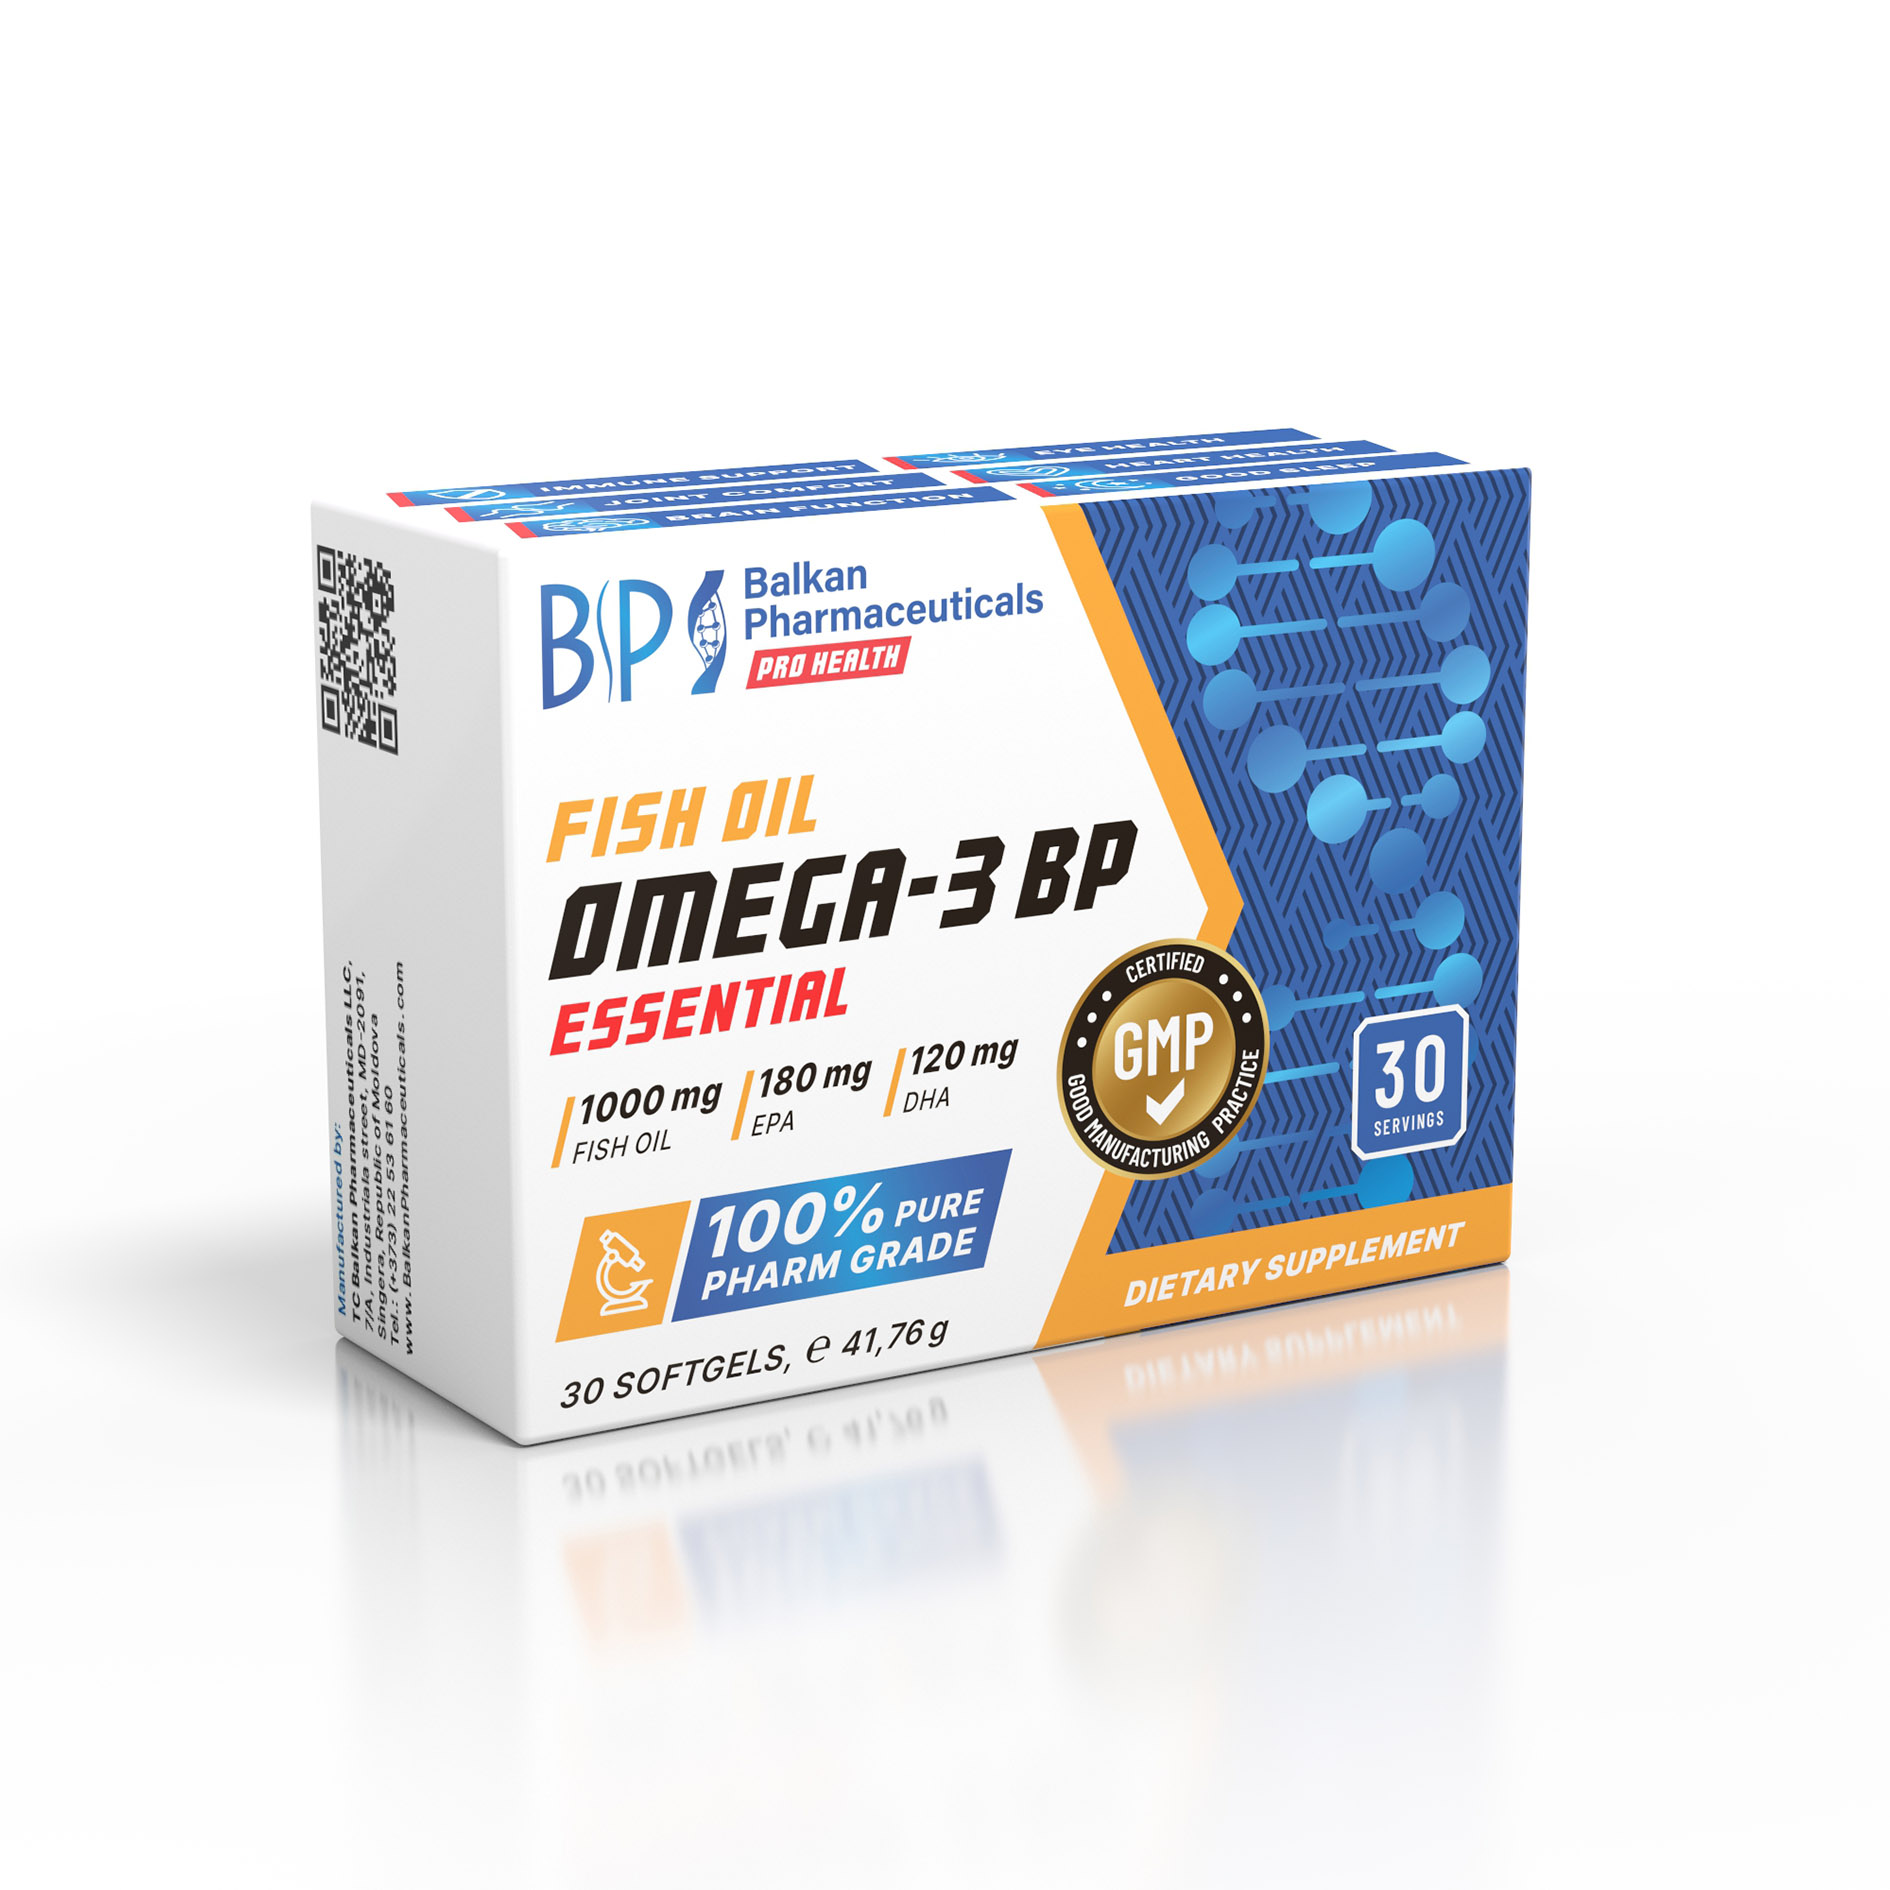 Купить Омега 3 Omega 3 BP Essential от Balkan Pharmaceuticals (30капс) в  Минске. Омега 3 (Omega 3) Balkan Pharmaceuticals доставка по Беларуси